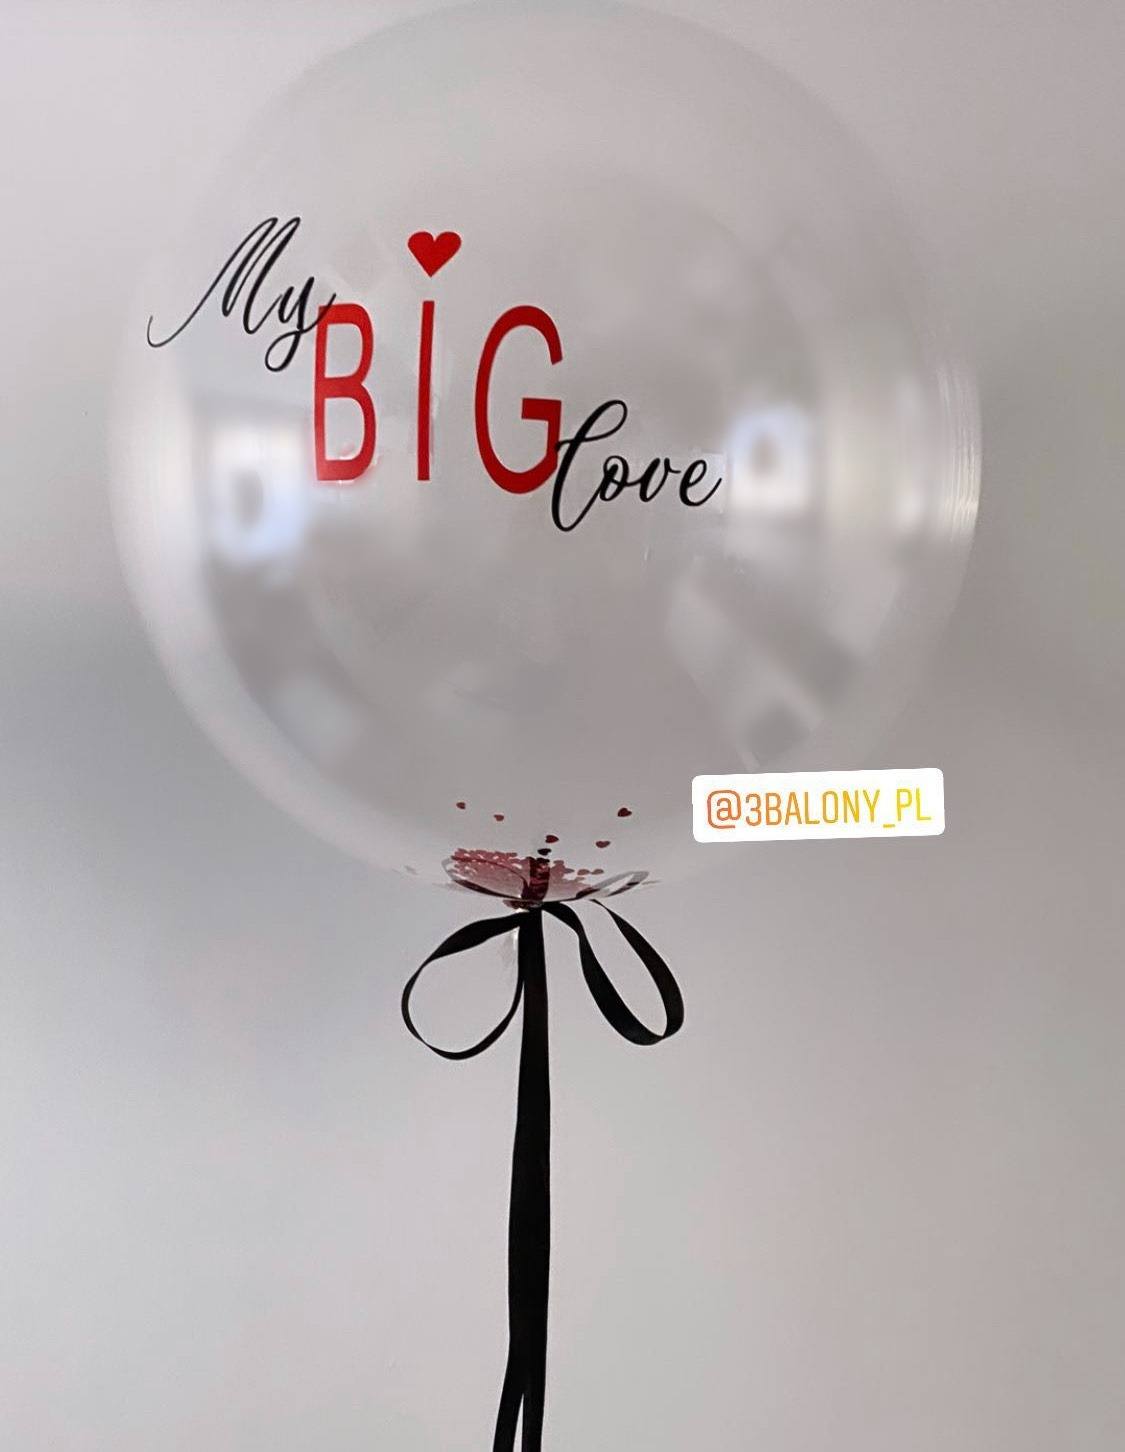 Balon z napisem „My Big love”